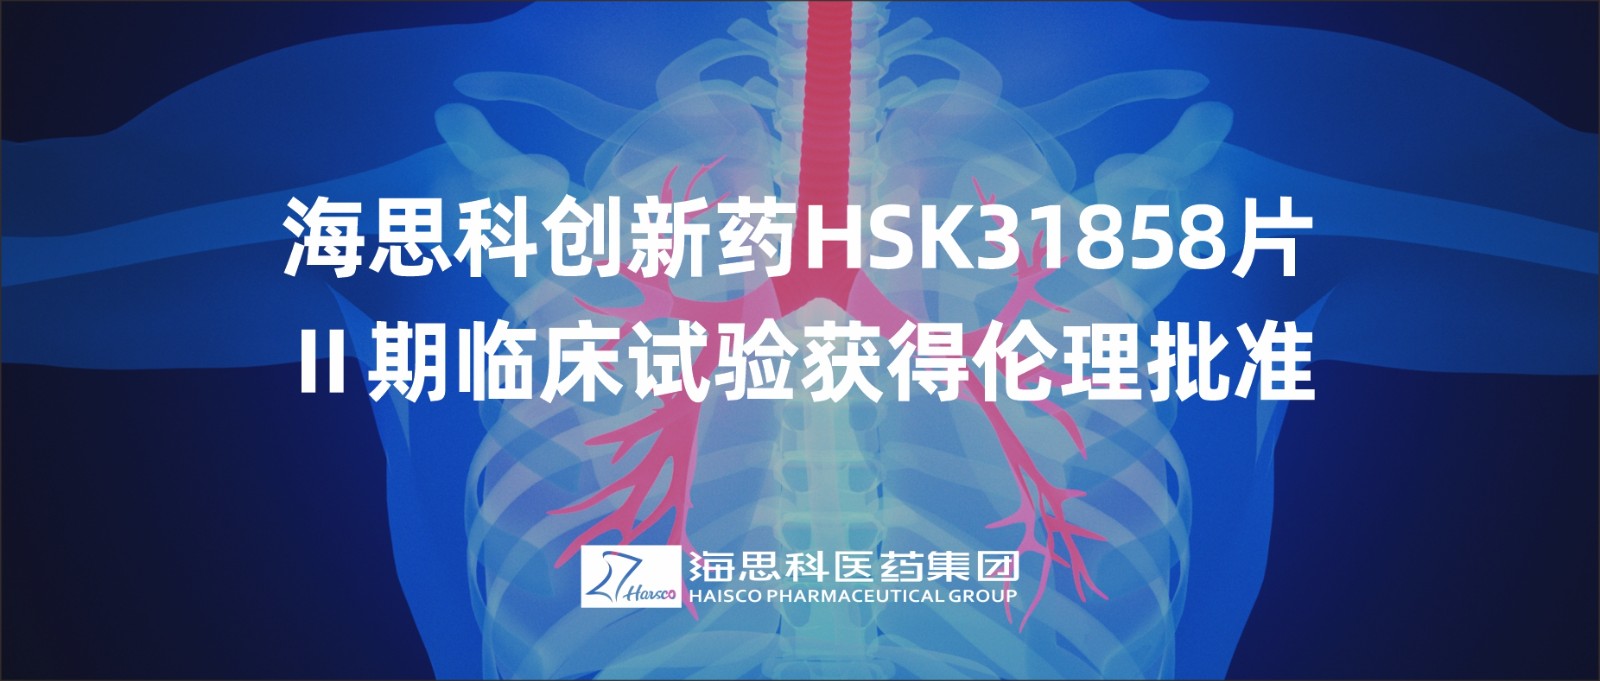 云顶国际官网创新药HSK31858片Ⅱ期临床试验获得伦理批准